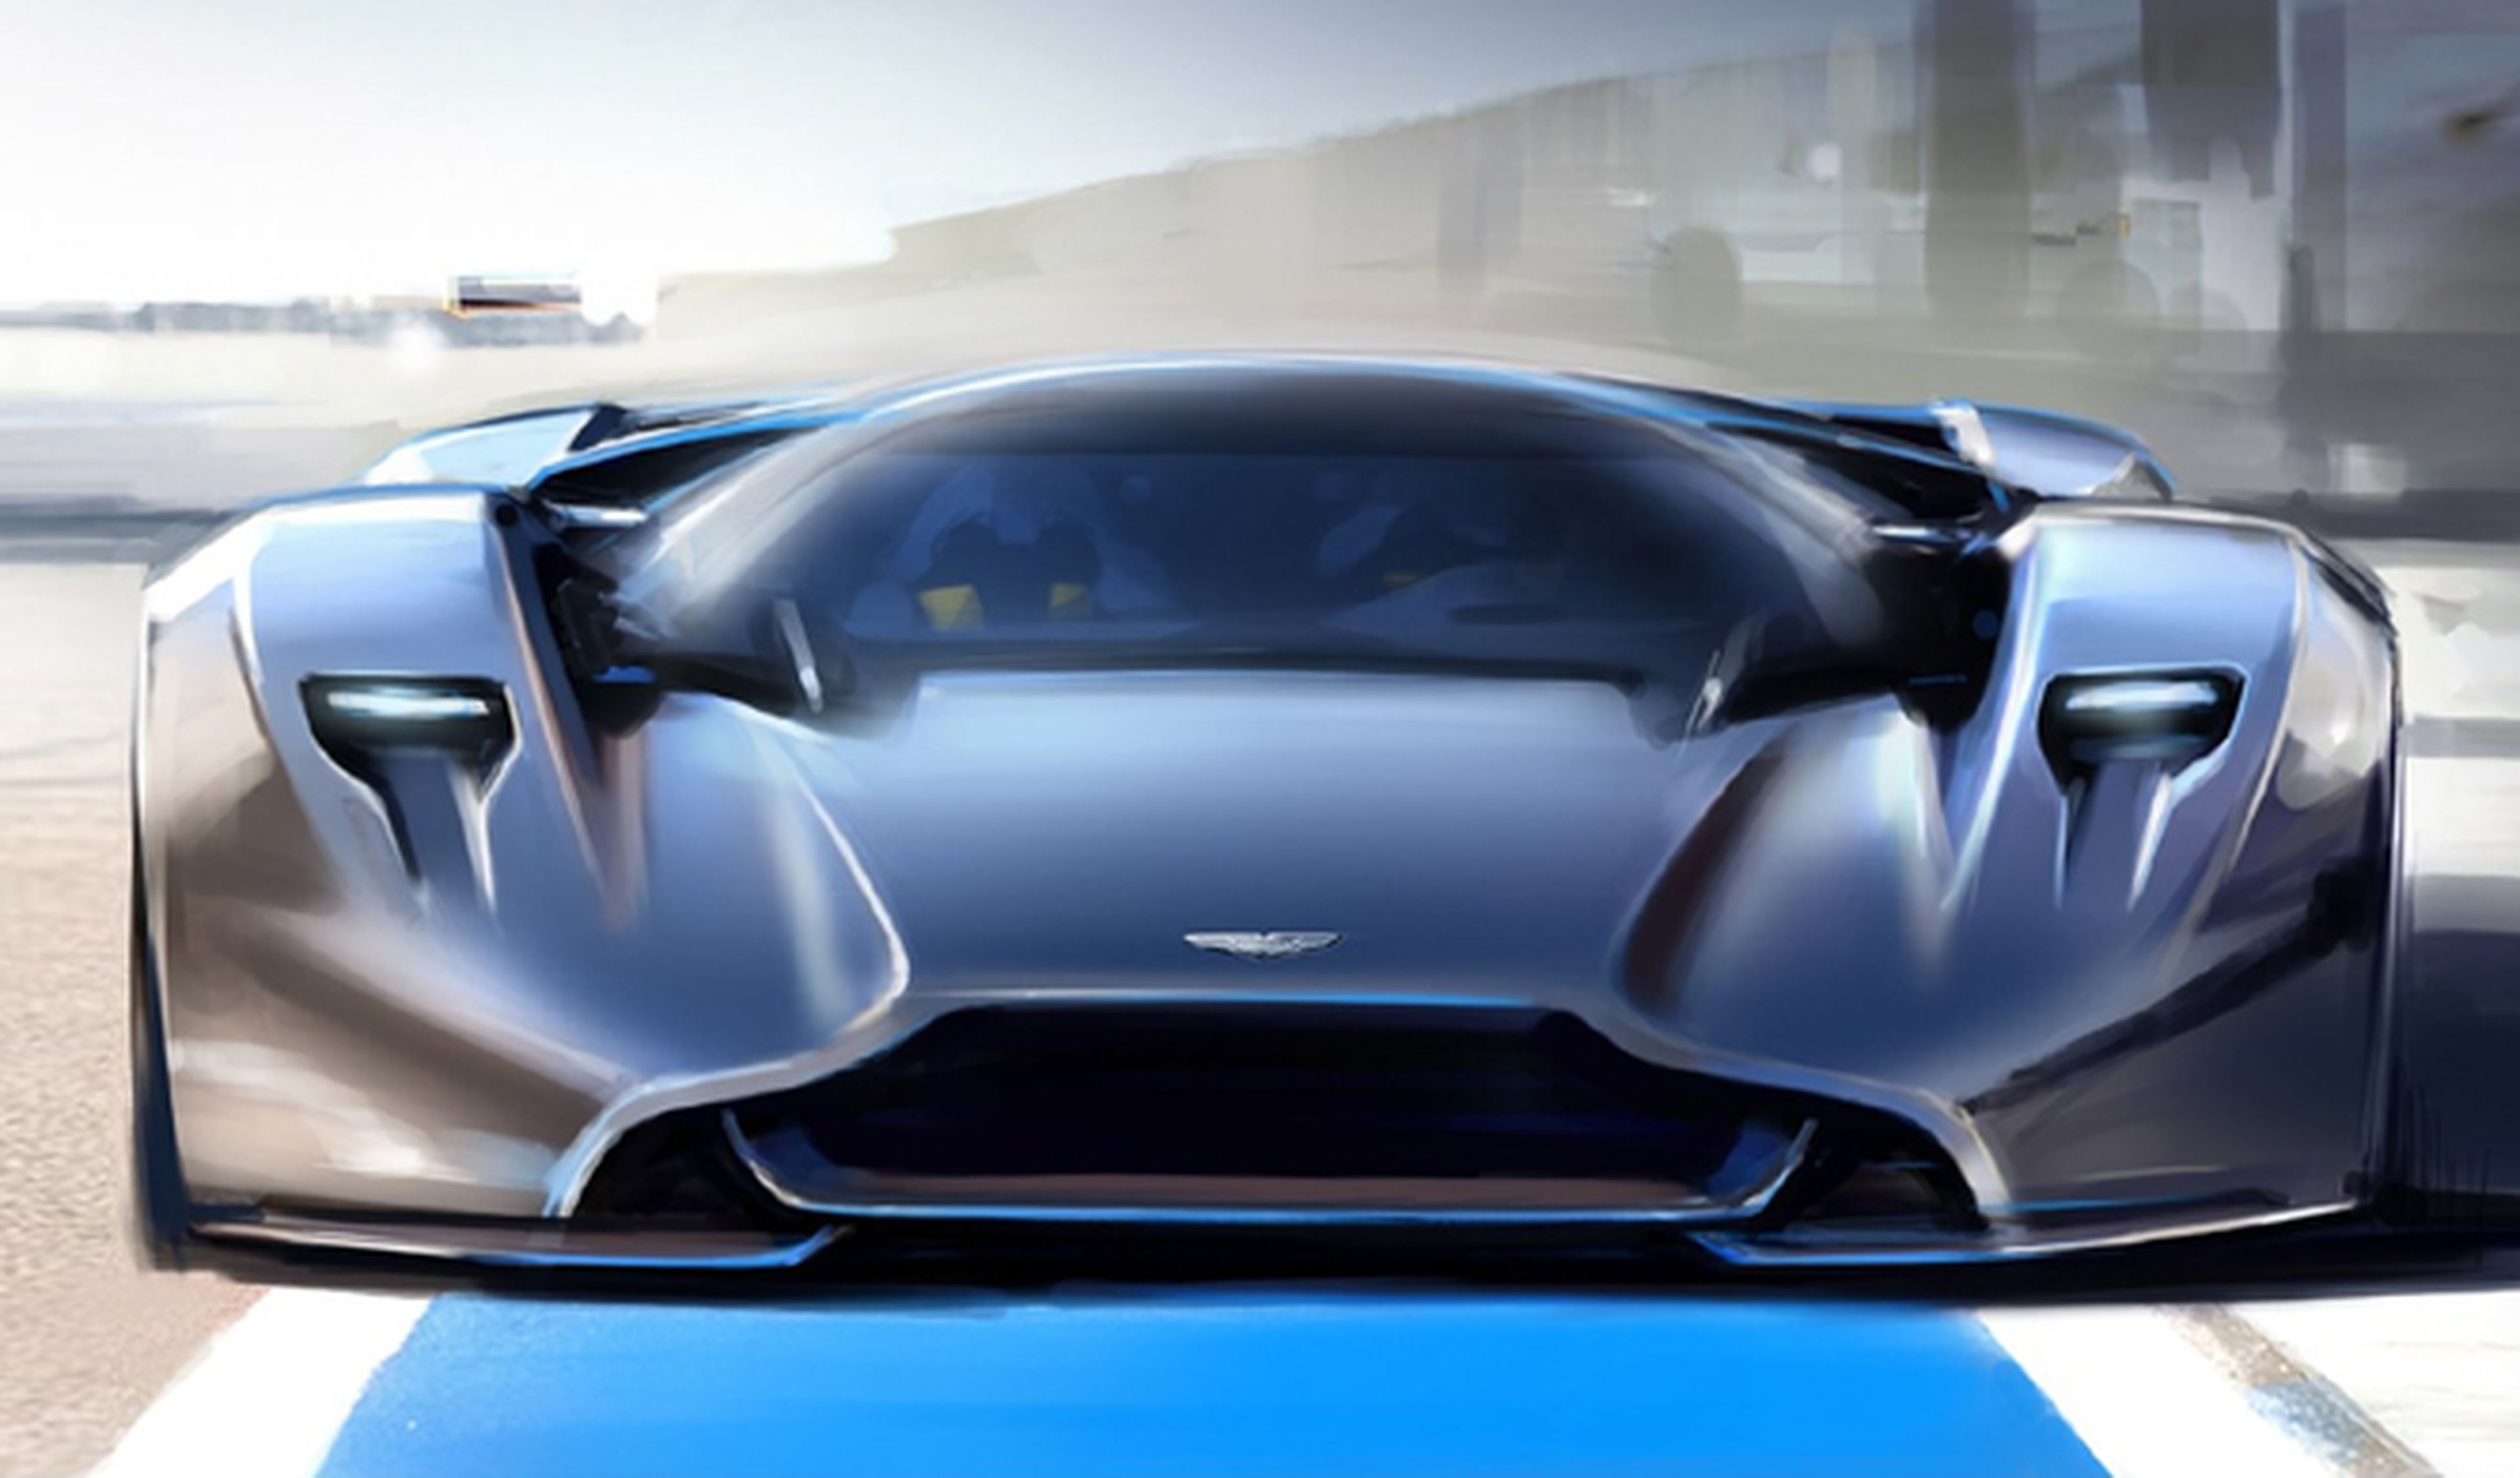 Más detalles sobre el deportivo de Aston Martin y Red Bull